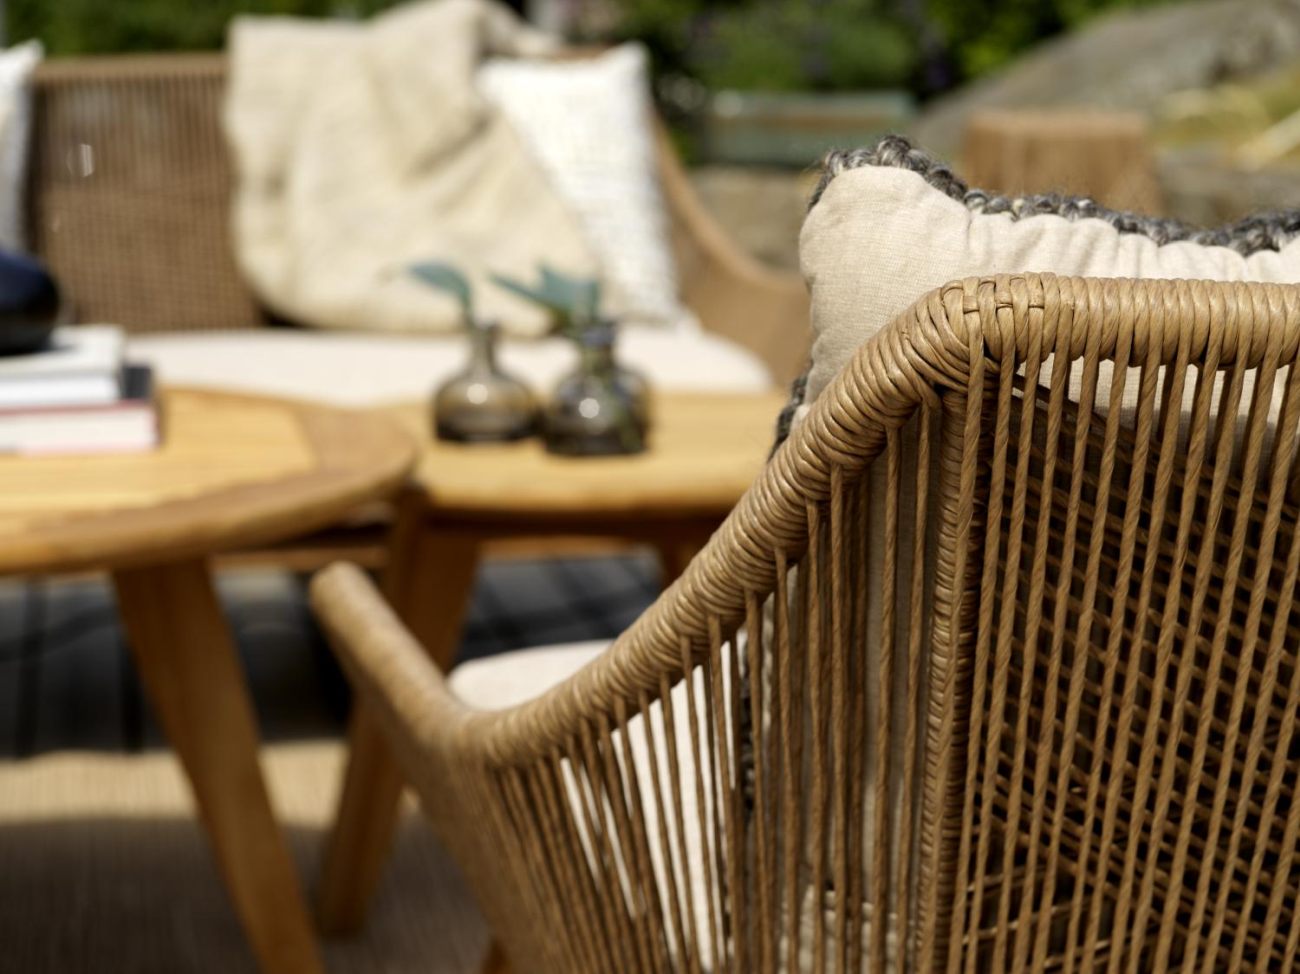 Der Gartensessel Hassel überzeugt mit seinem modernen Design. Gefertigt wurde er aus Rattan, welches einen braunen Farbton besitzt. Das Gestell ist aus Teakholz und hat eine natürliche Farbe. Die Sitzhöhe des Sessels beträgt 47 cm.